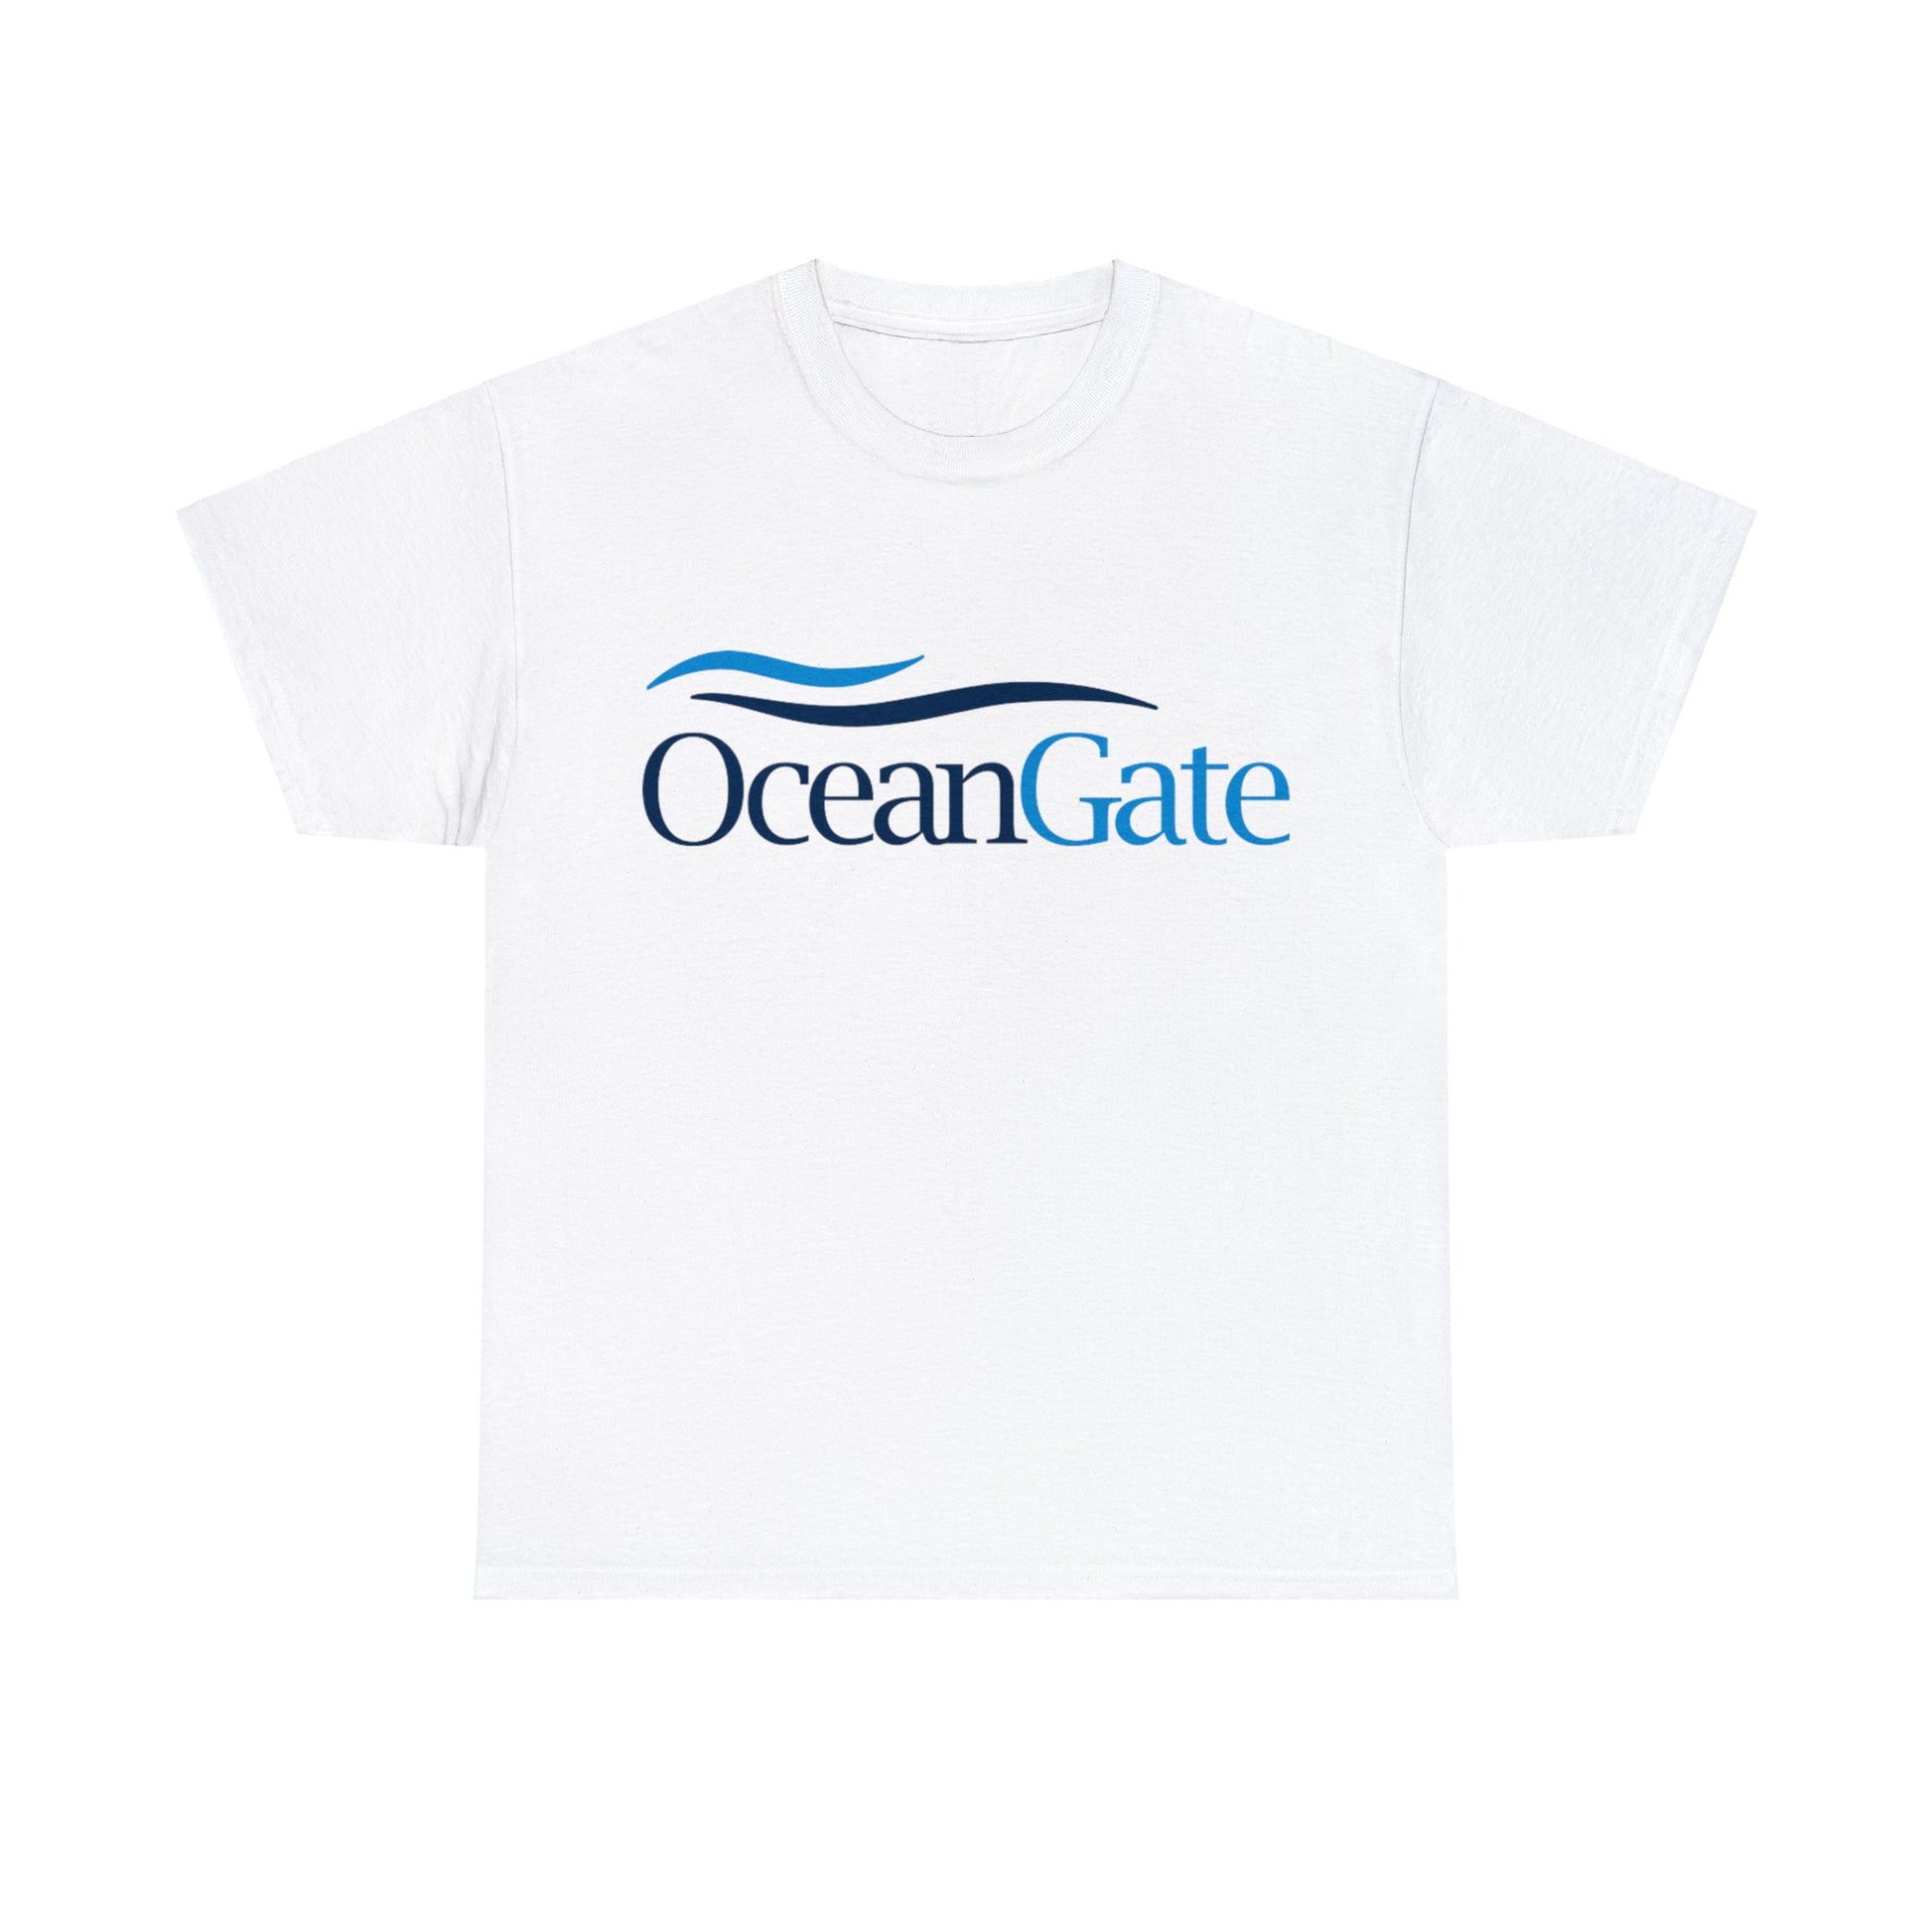 OceanGate Tee White